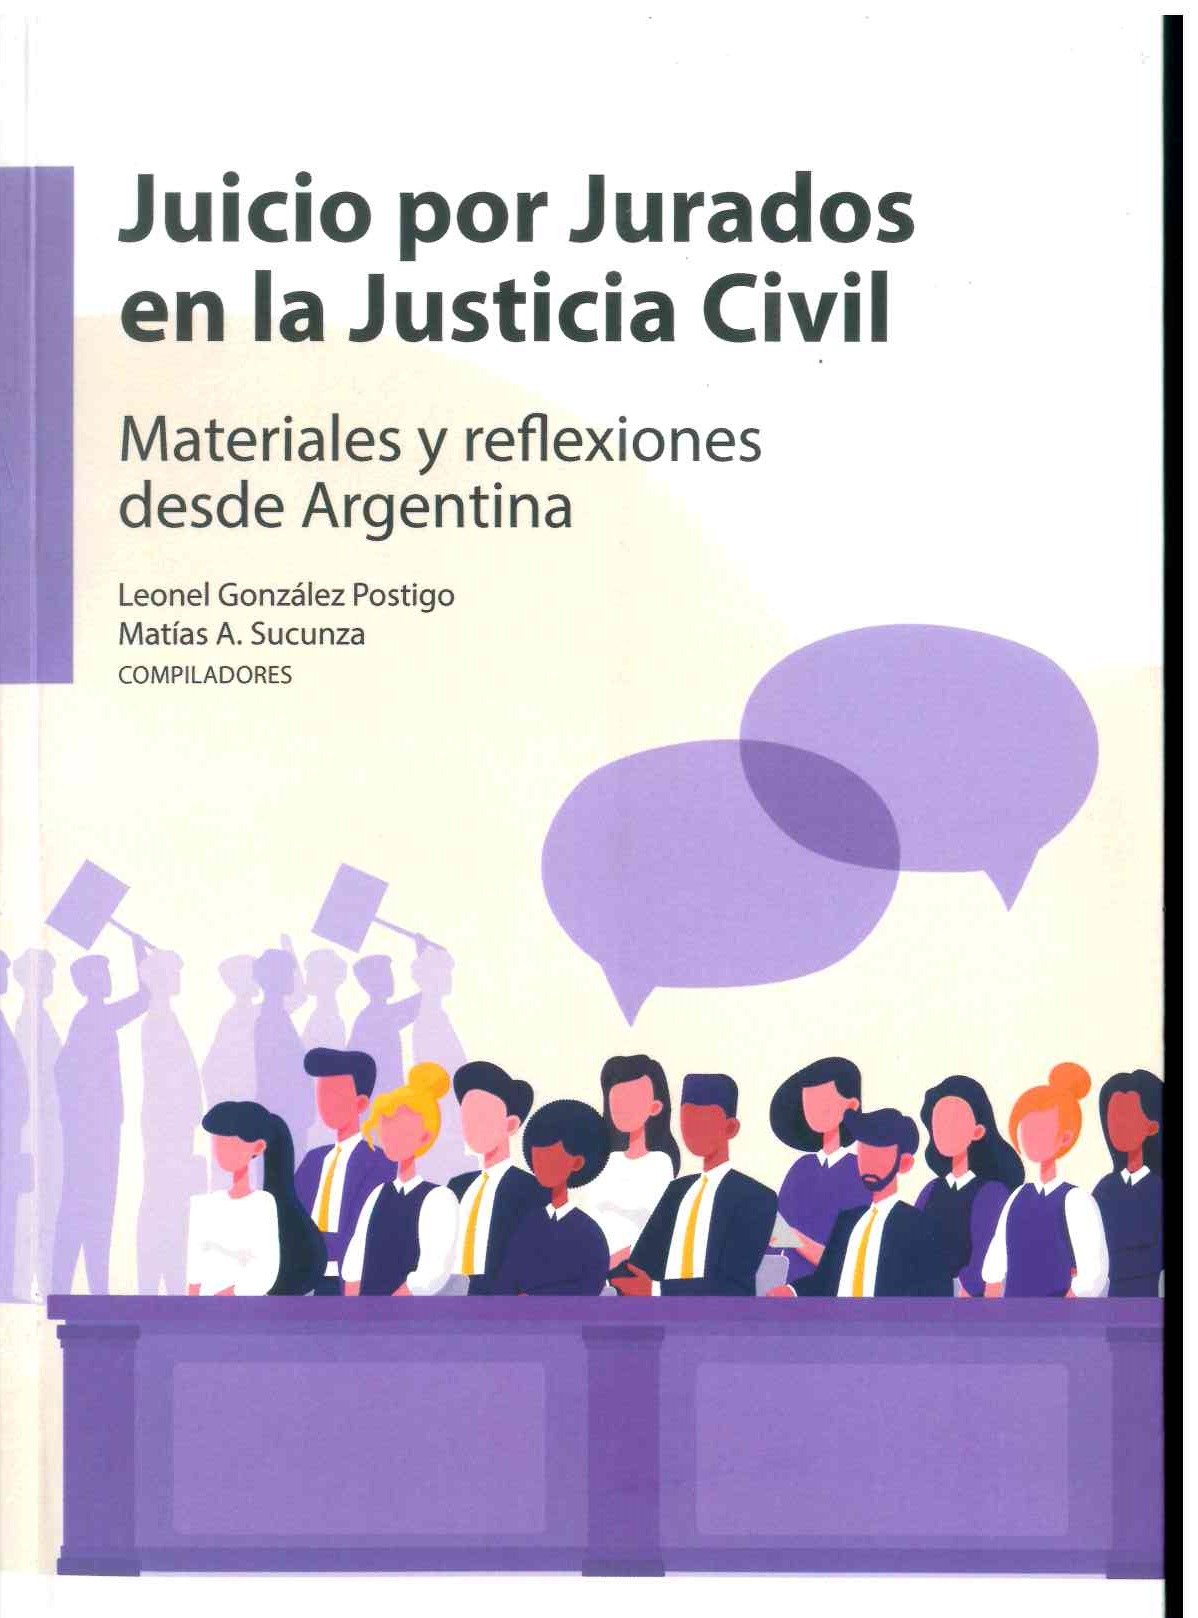 Juicio por jurados en la justicia civil. Materiales y reflexiones desde Argentina